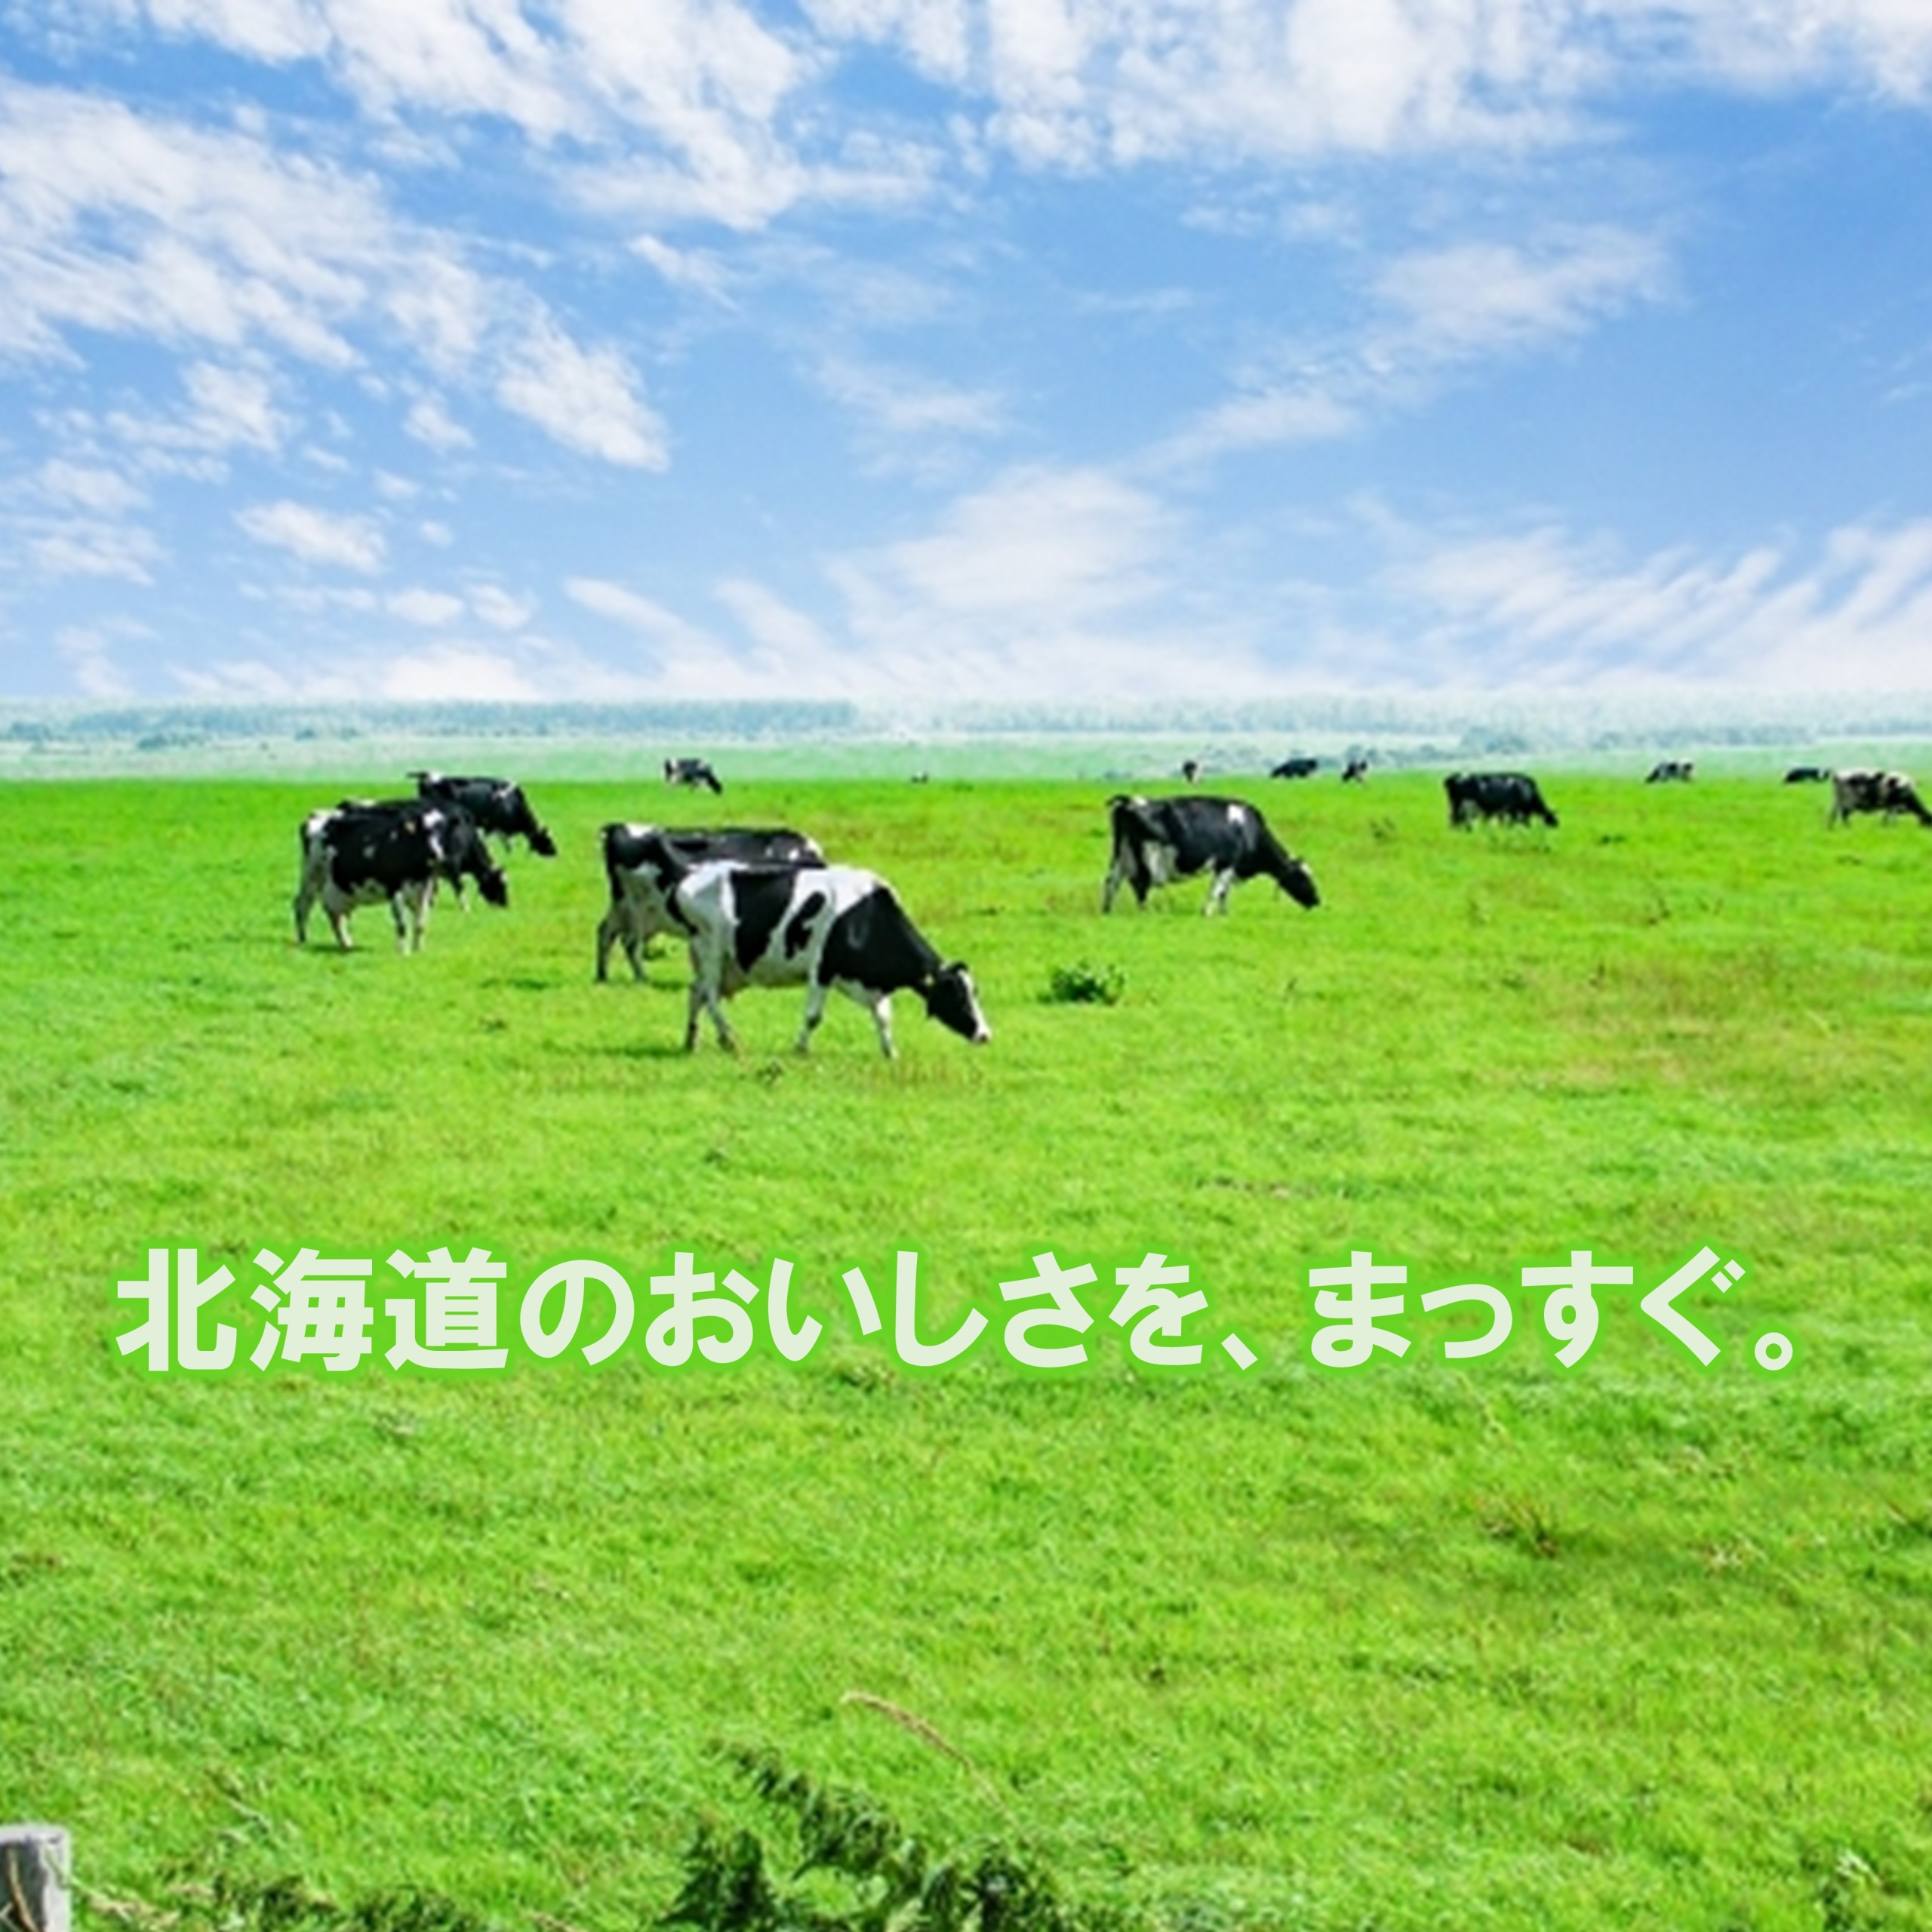 よつ葉の贈り物 北海道ミルクのスープの9袋セット【EC-B】